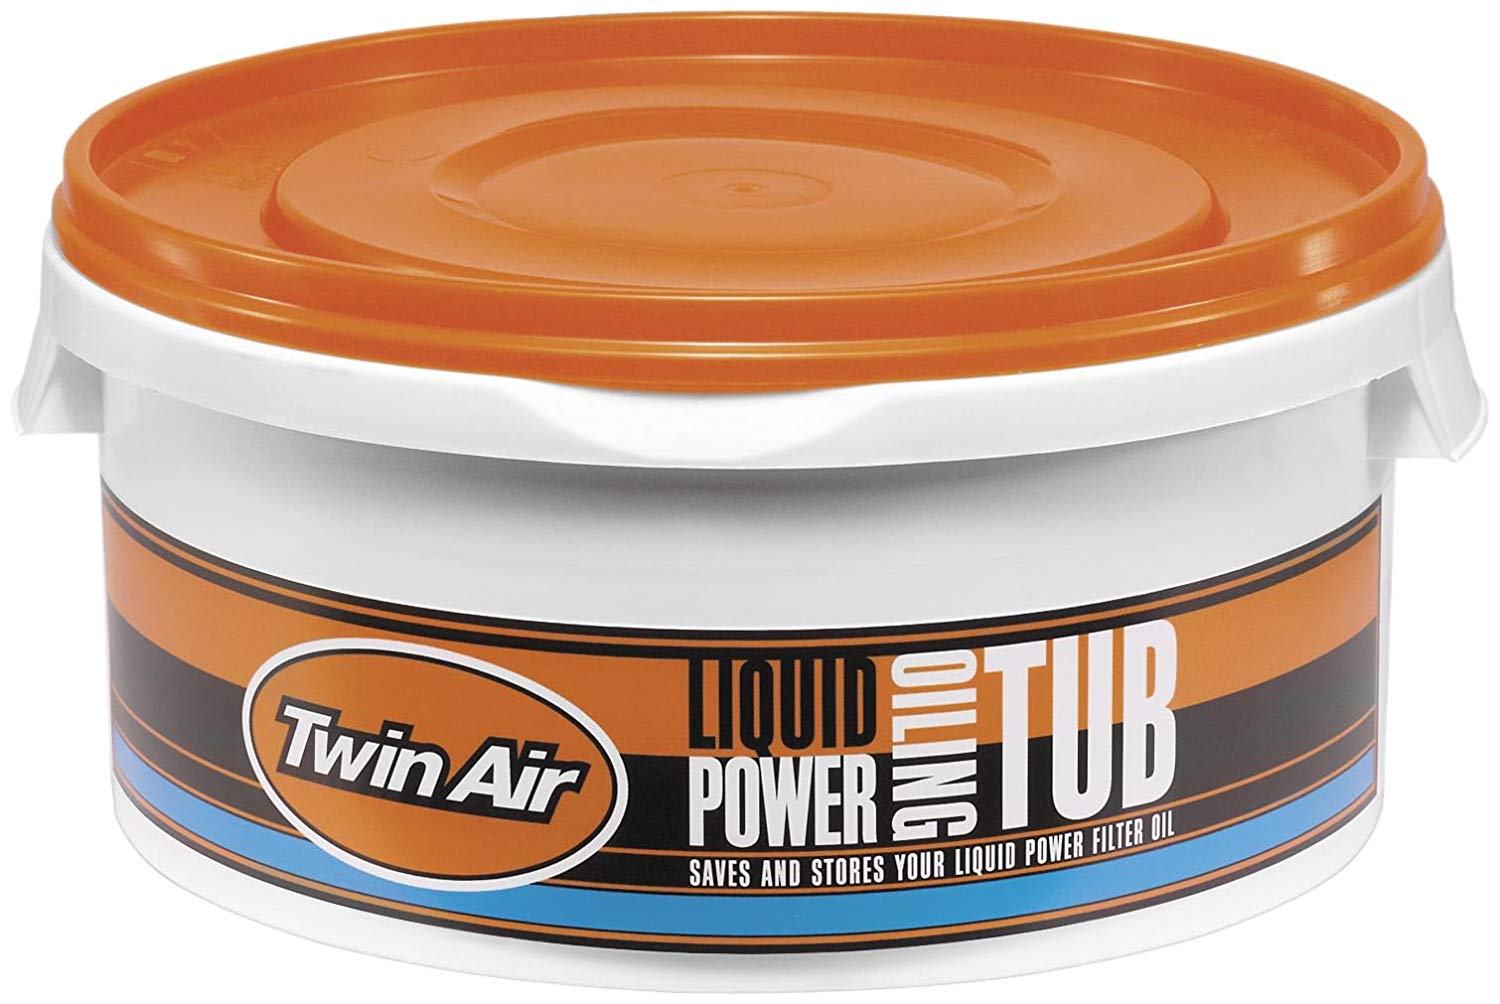 Twin Air Original Liquid Power Oiling Tub